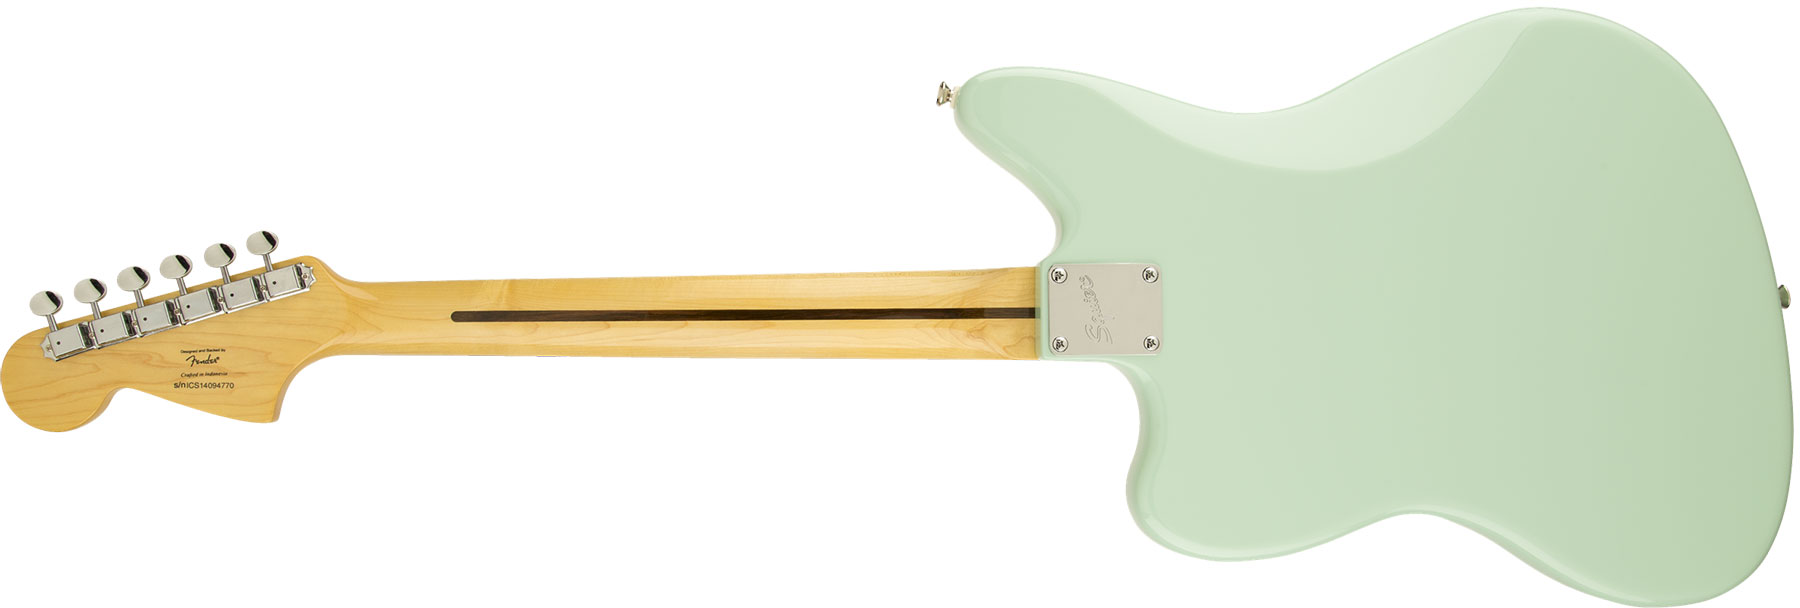 Squier Jaguar Vintage Modified Ss Lau - Surf Green - Str shape electric guitar - Variation 1